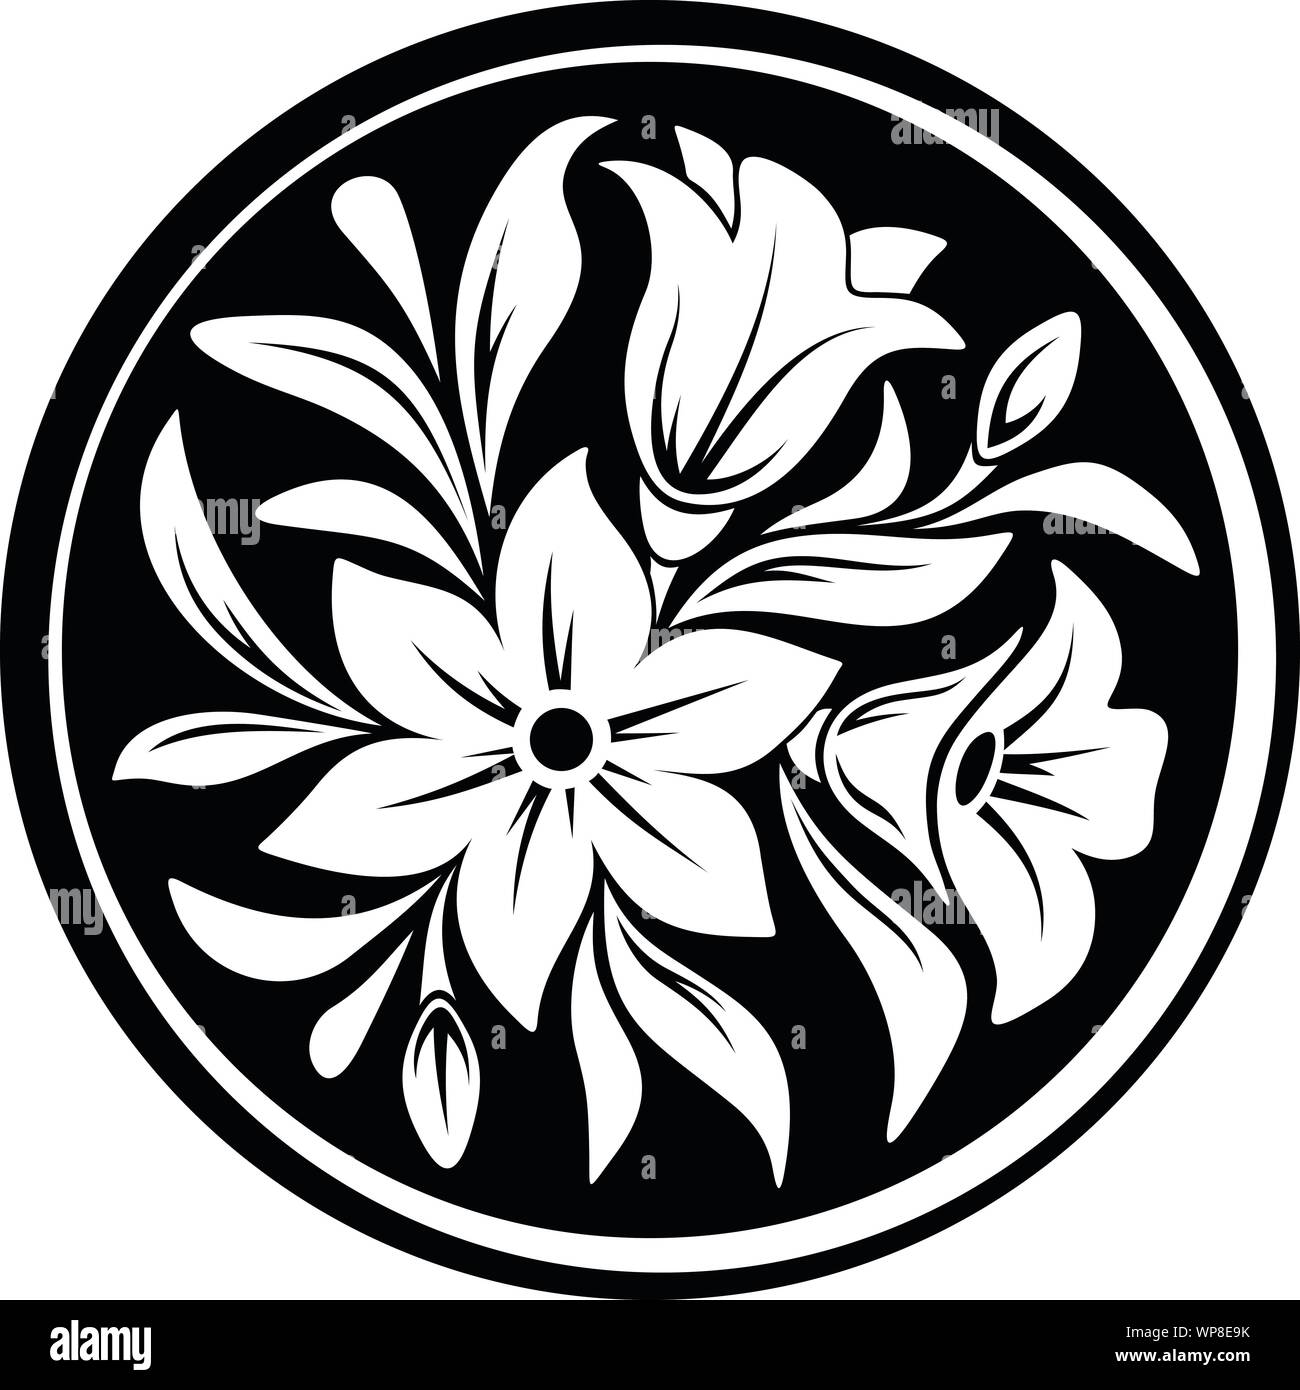 Vektor weiß Ornament mit Blumen und Blätter auf einen schwarzen Kreis Hintergrund. Stock Vektor